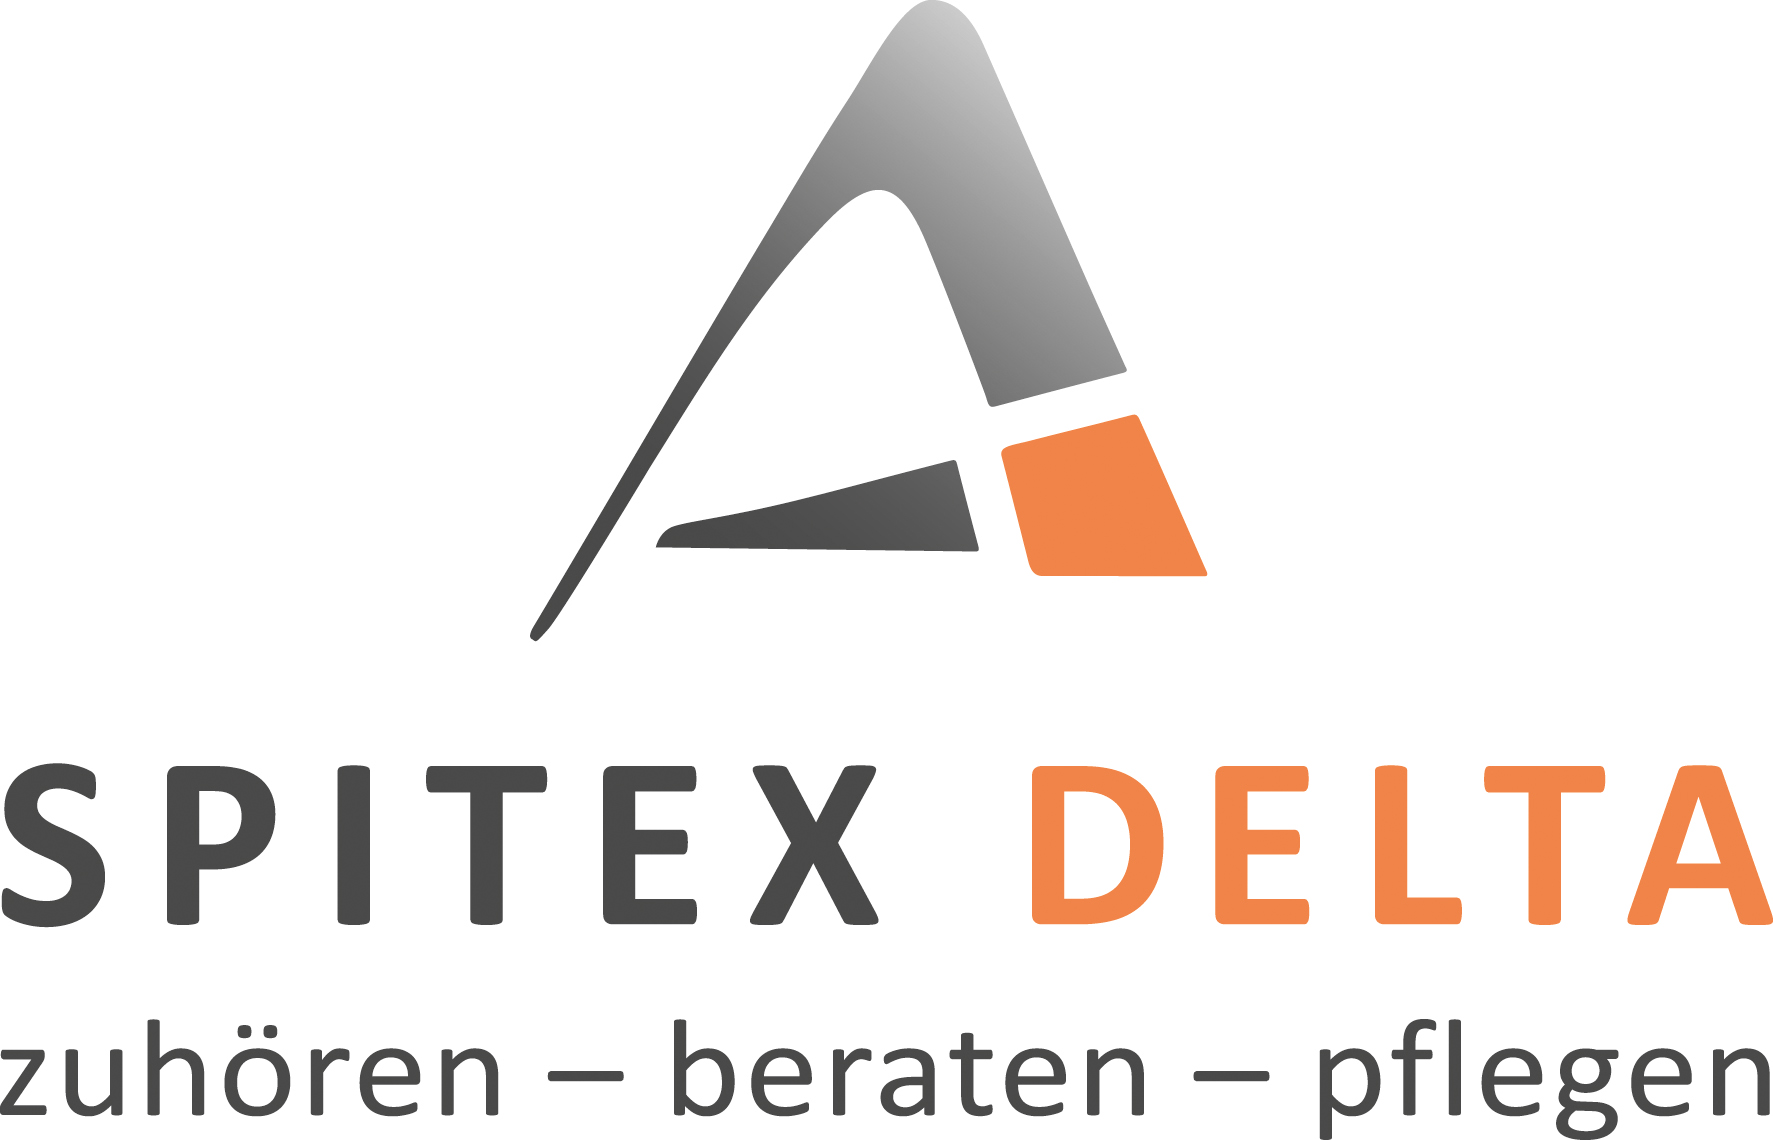 Spitex Delta: Steffisburg